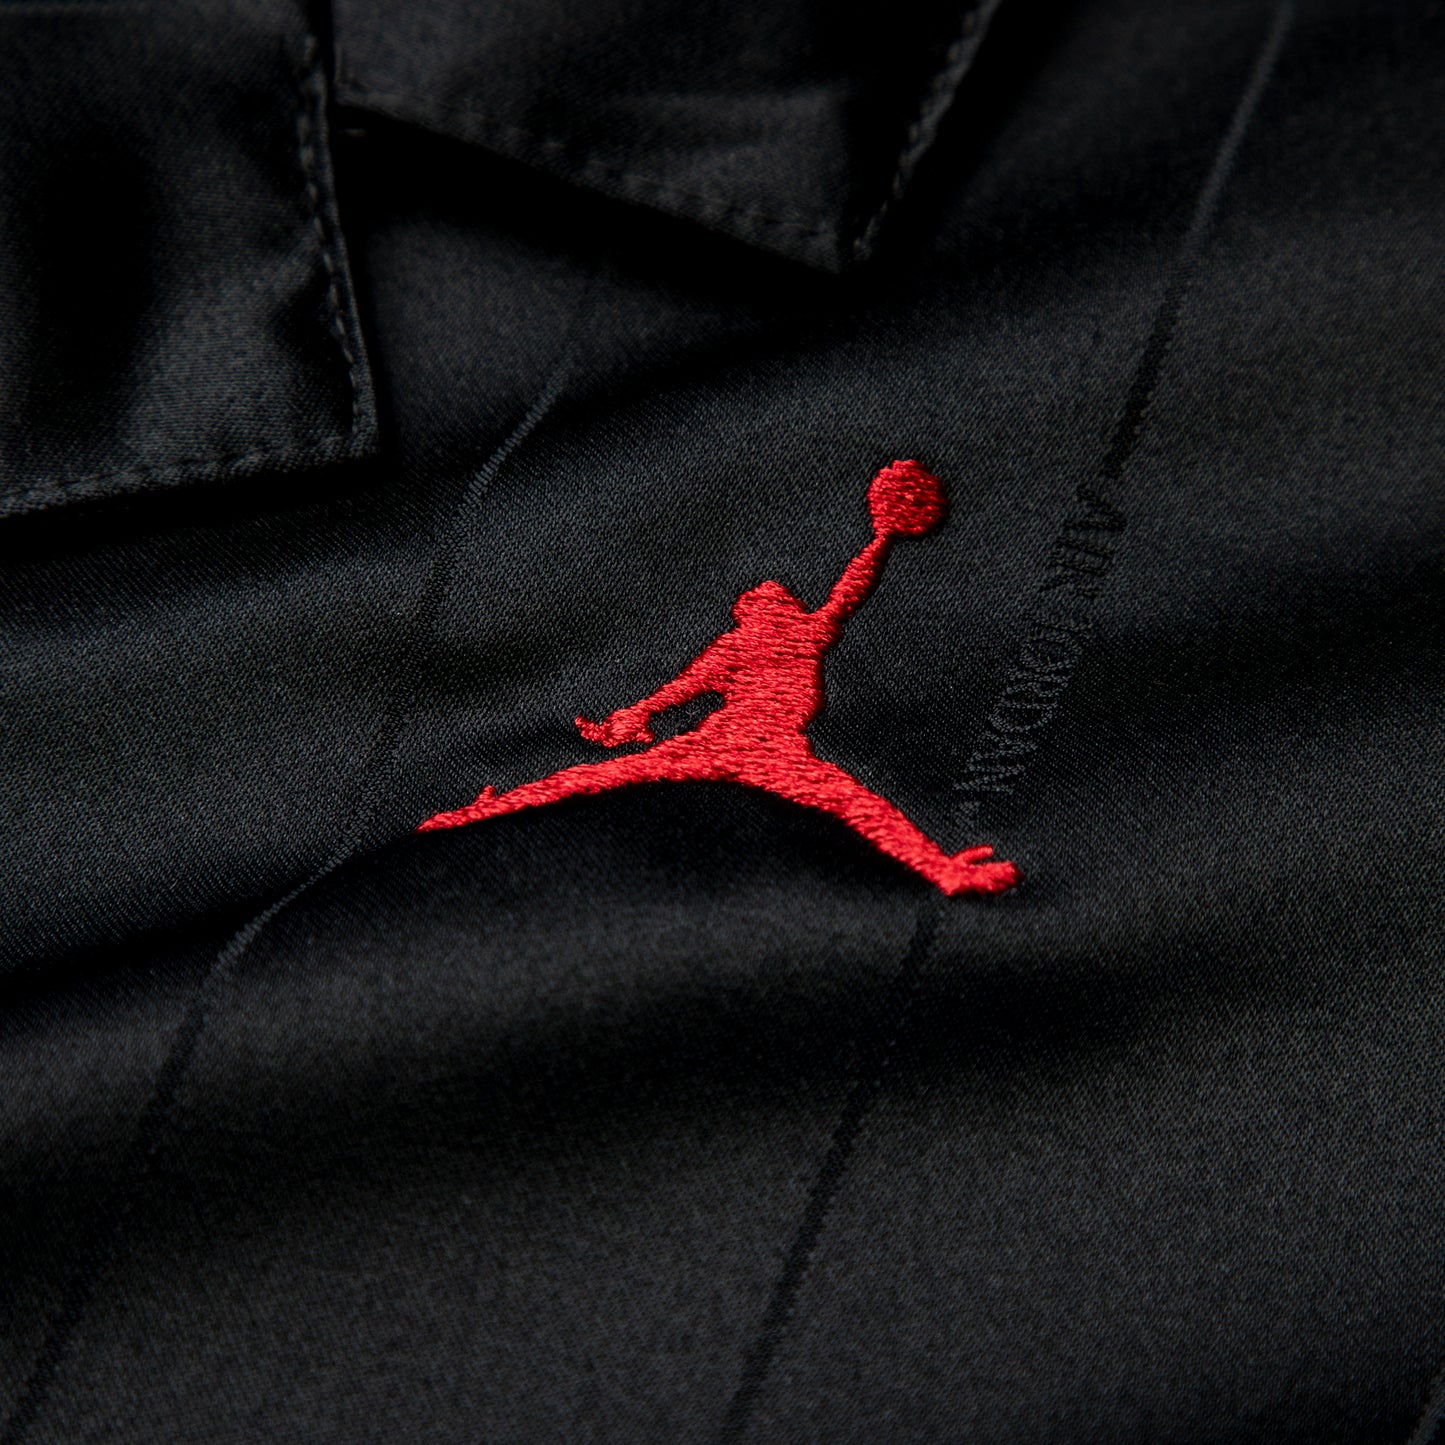 Nike Womens Jordan Heritage Top (Black/Gym Red)